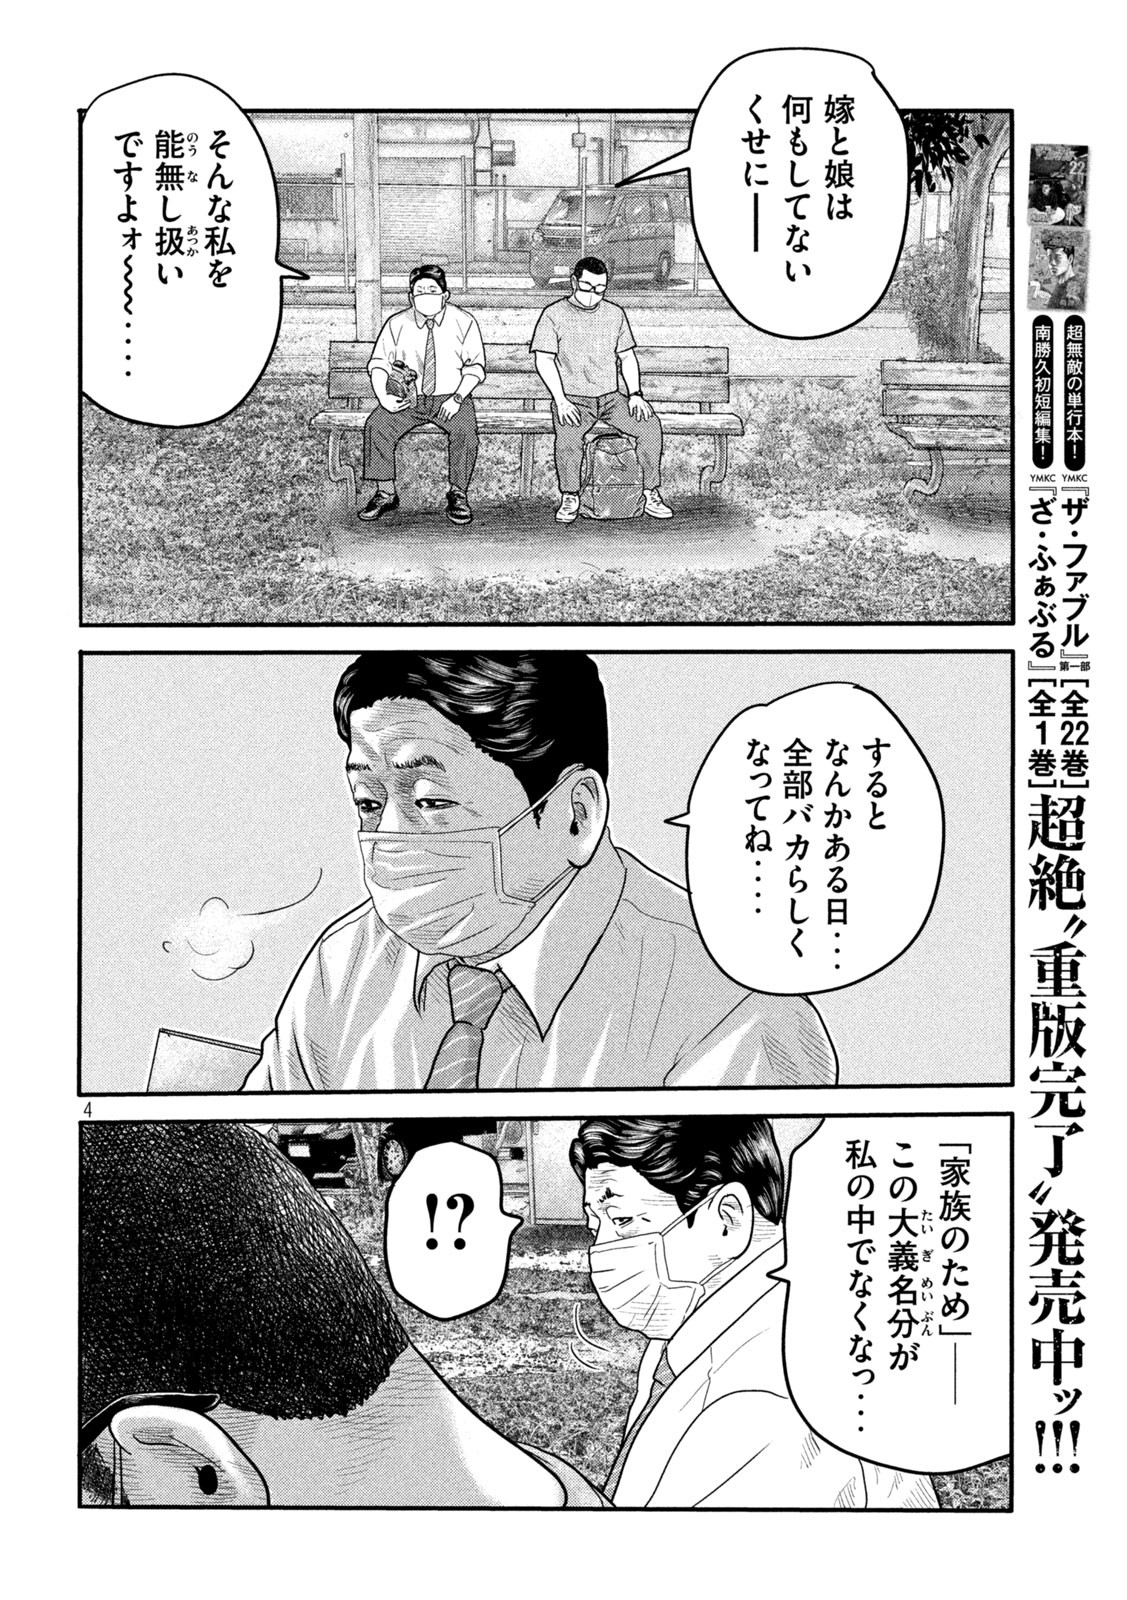 ザ・ファブル The Second Contact 第2話 - Page 4